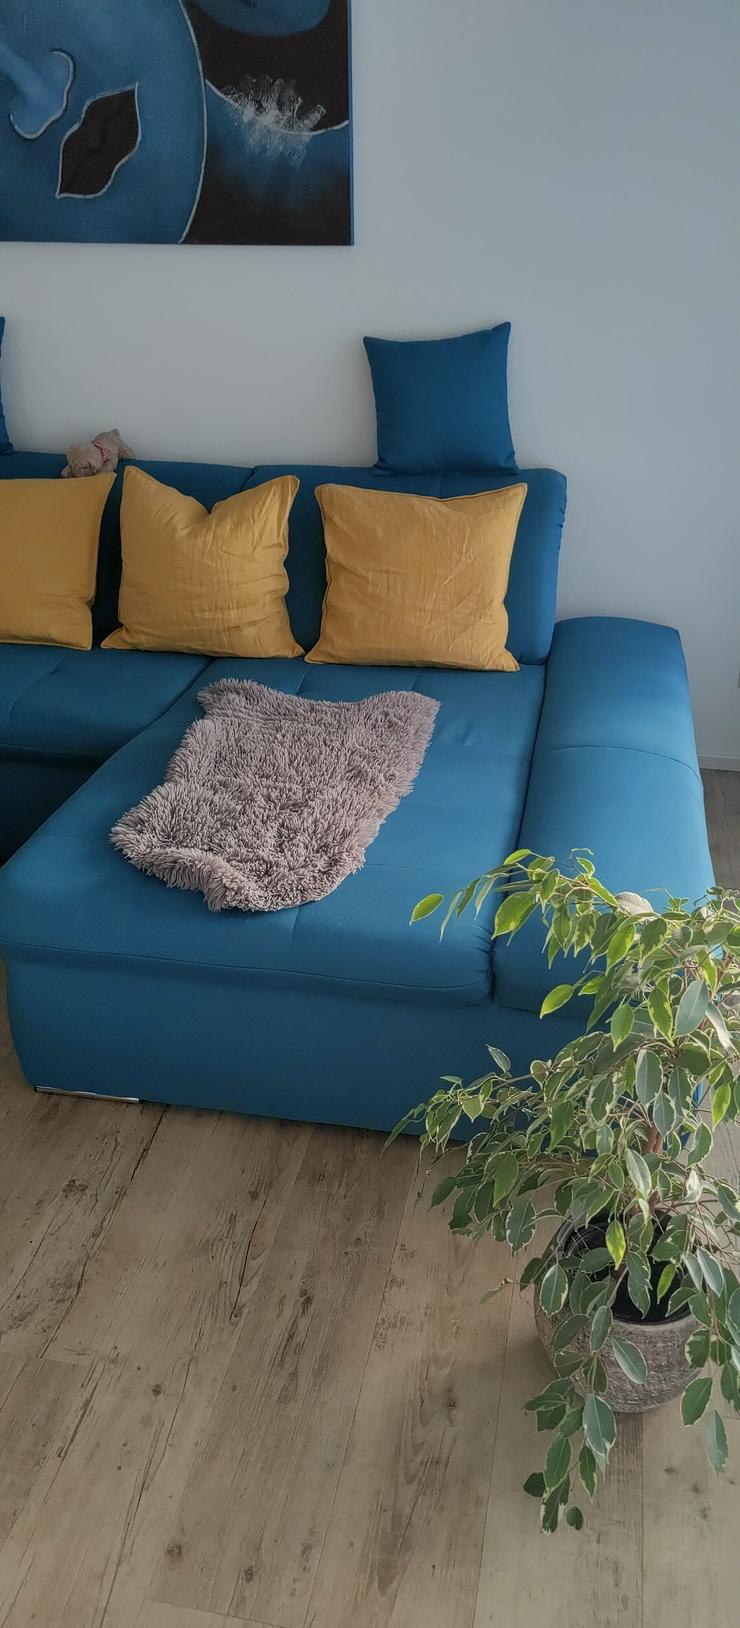 Bild 3: Sofa in Türkis mit 2 Zierkissen